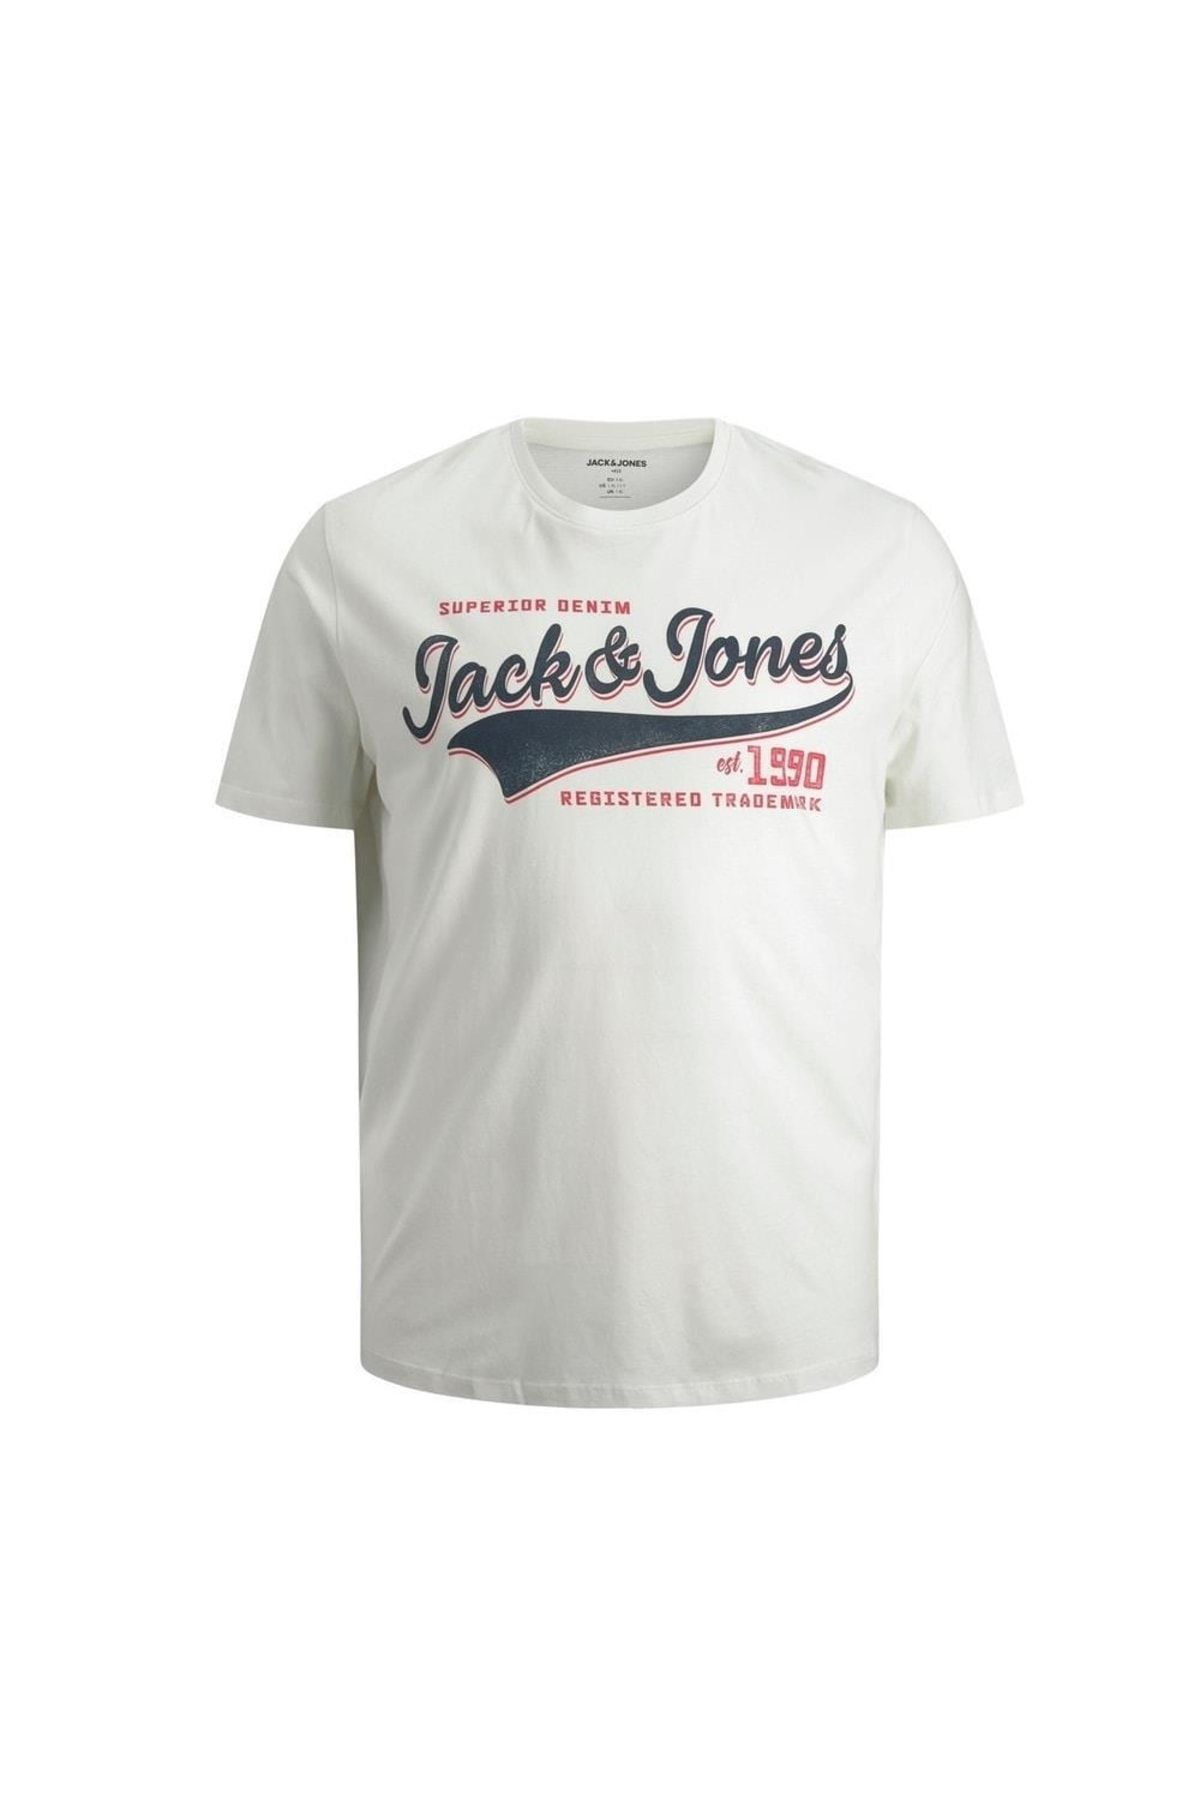 Jack & Jones جک و جونز 12193090 علامت تجاری متن 0 یقه آستین T